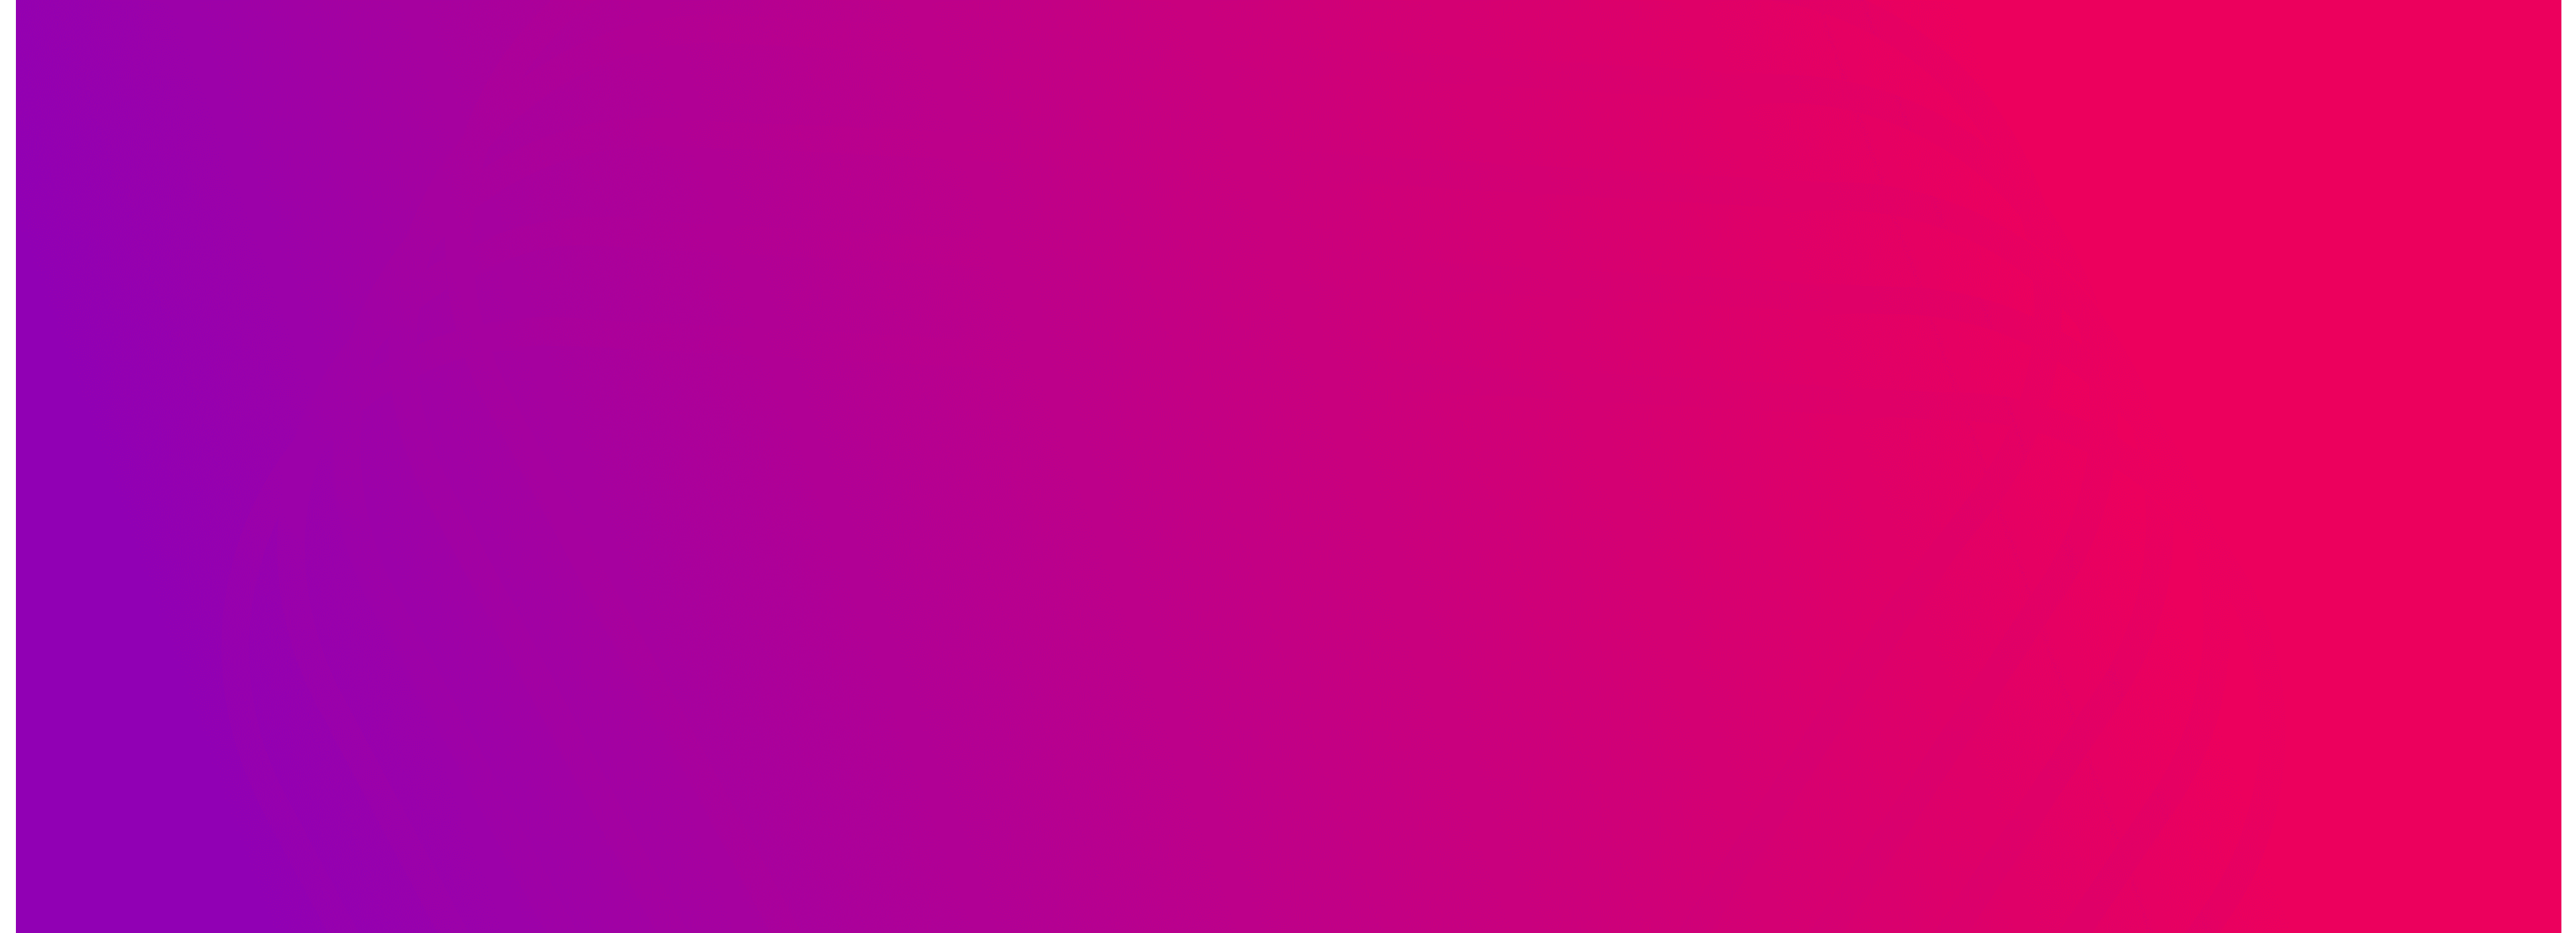 Gradiente de fundo roxo/rosa com um logotipo fraco da Appear visível